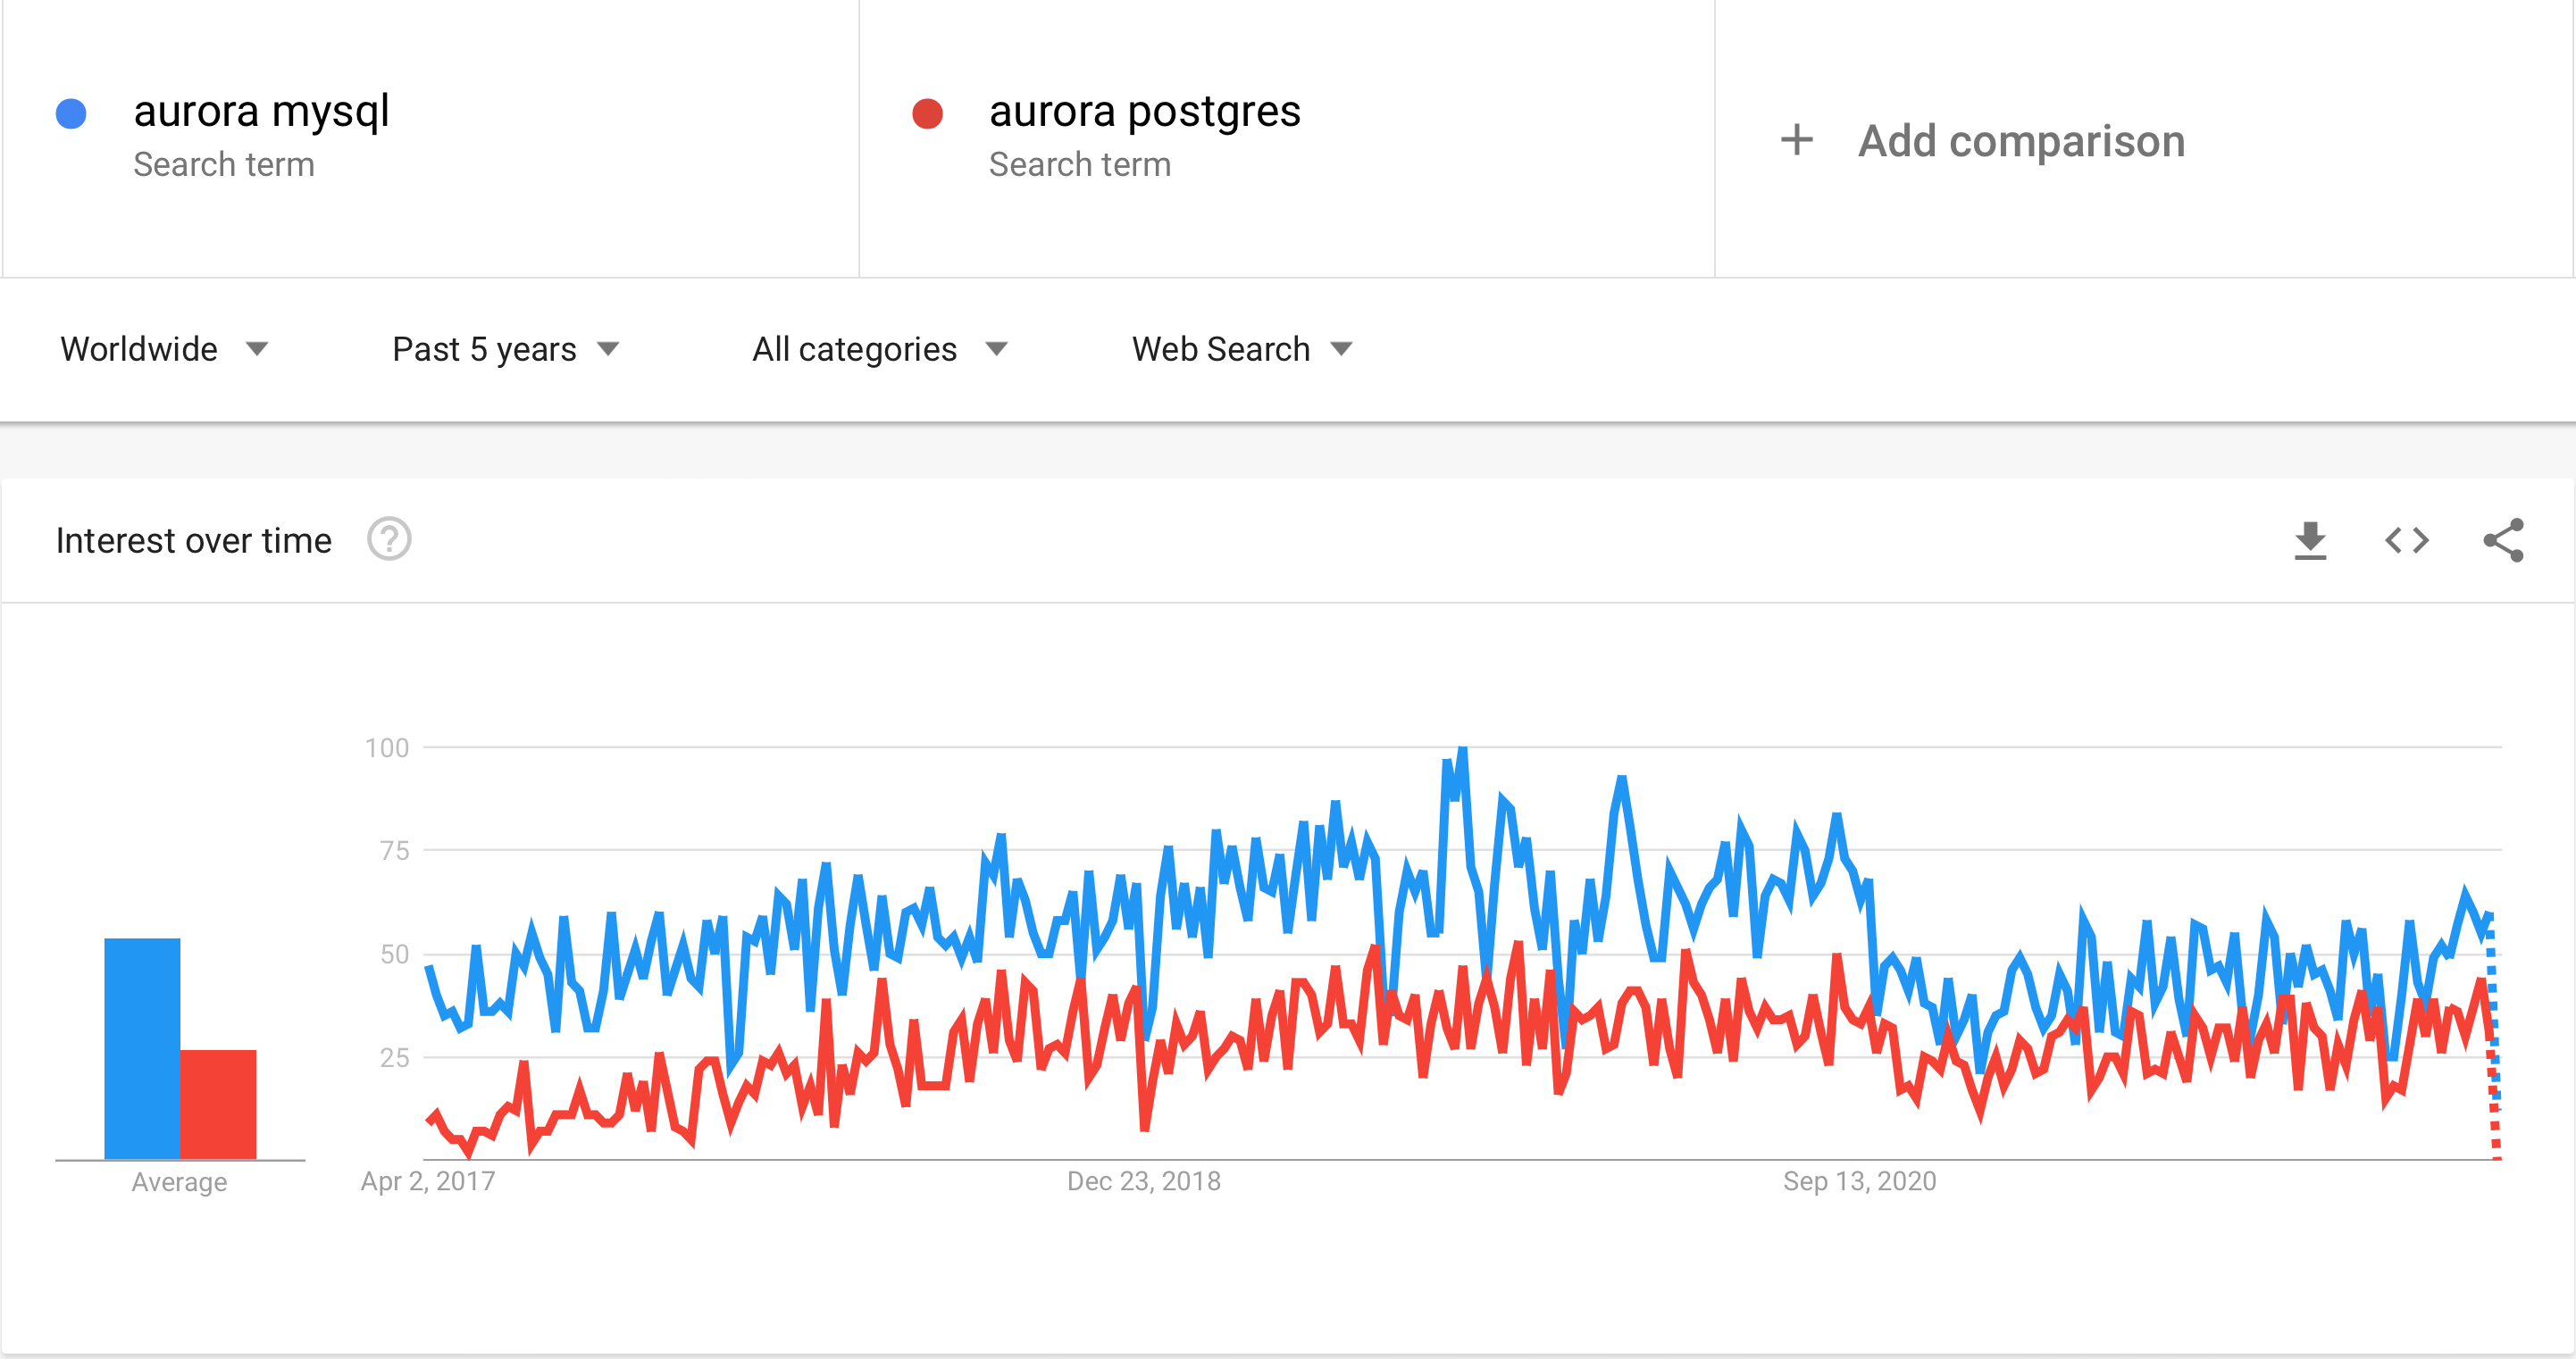 Popularity - Aurora MySQL vs Postgres